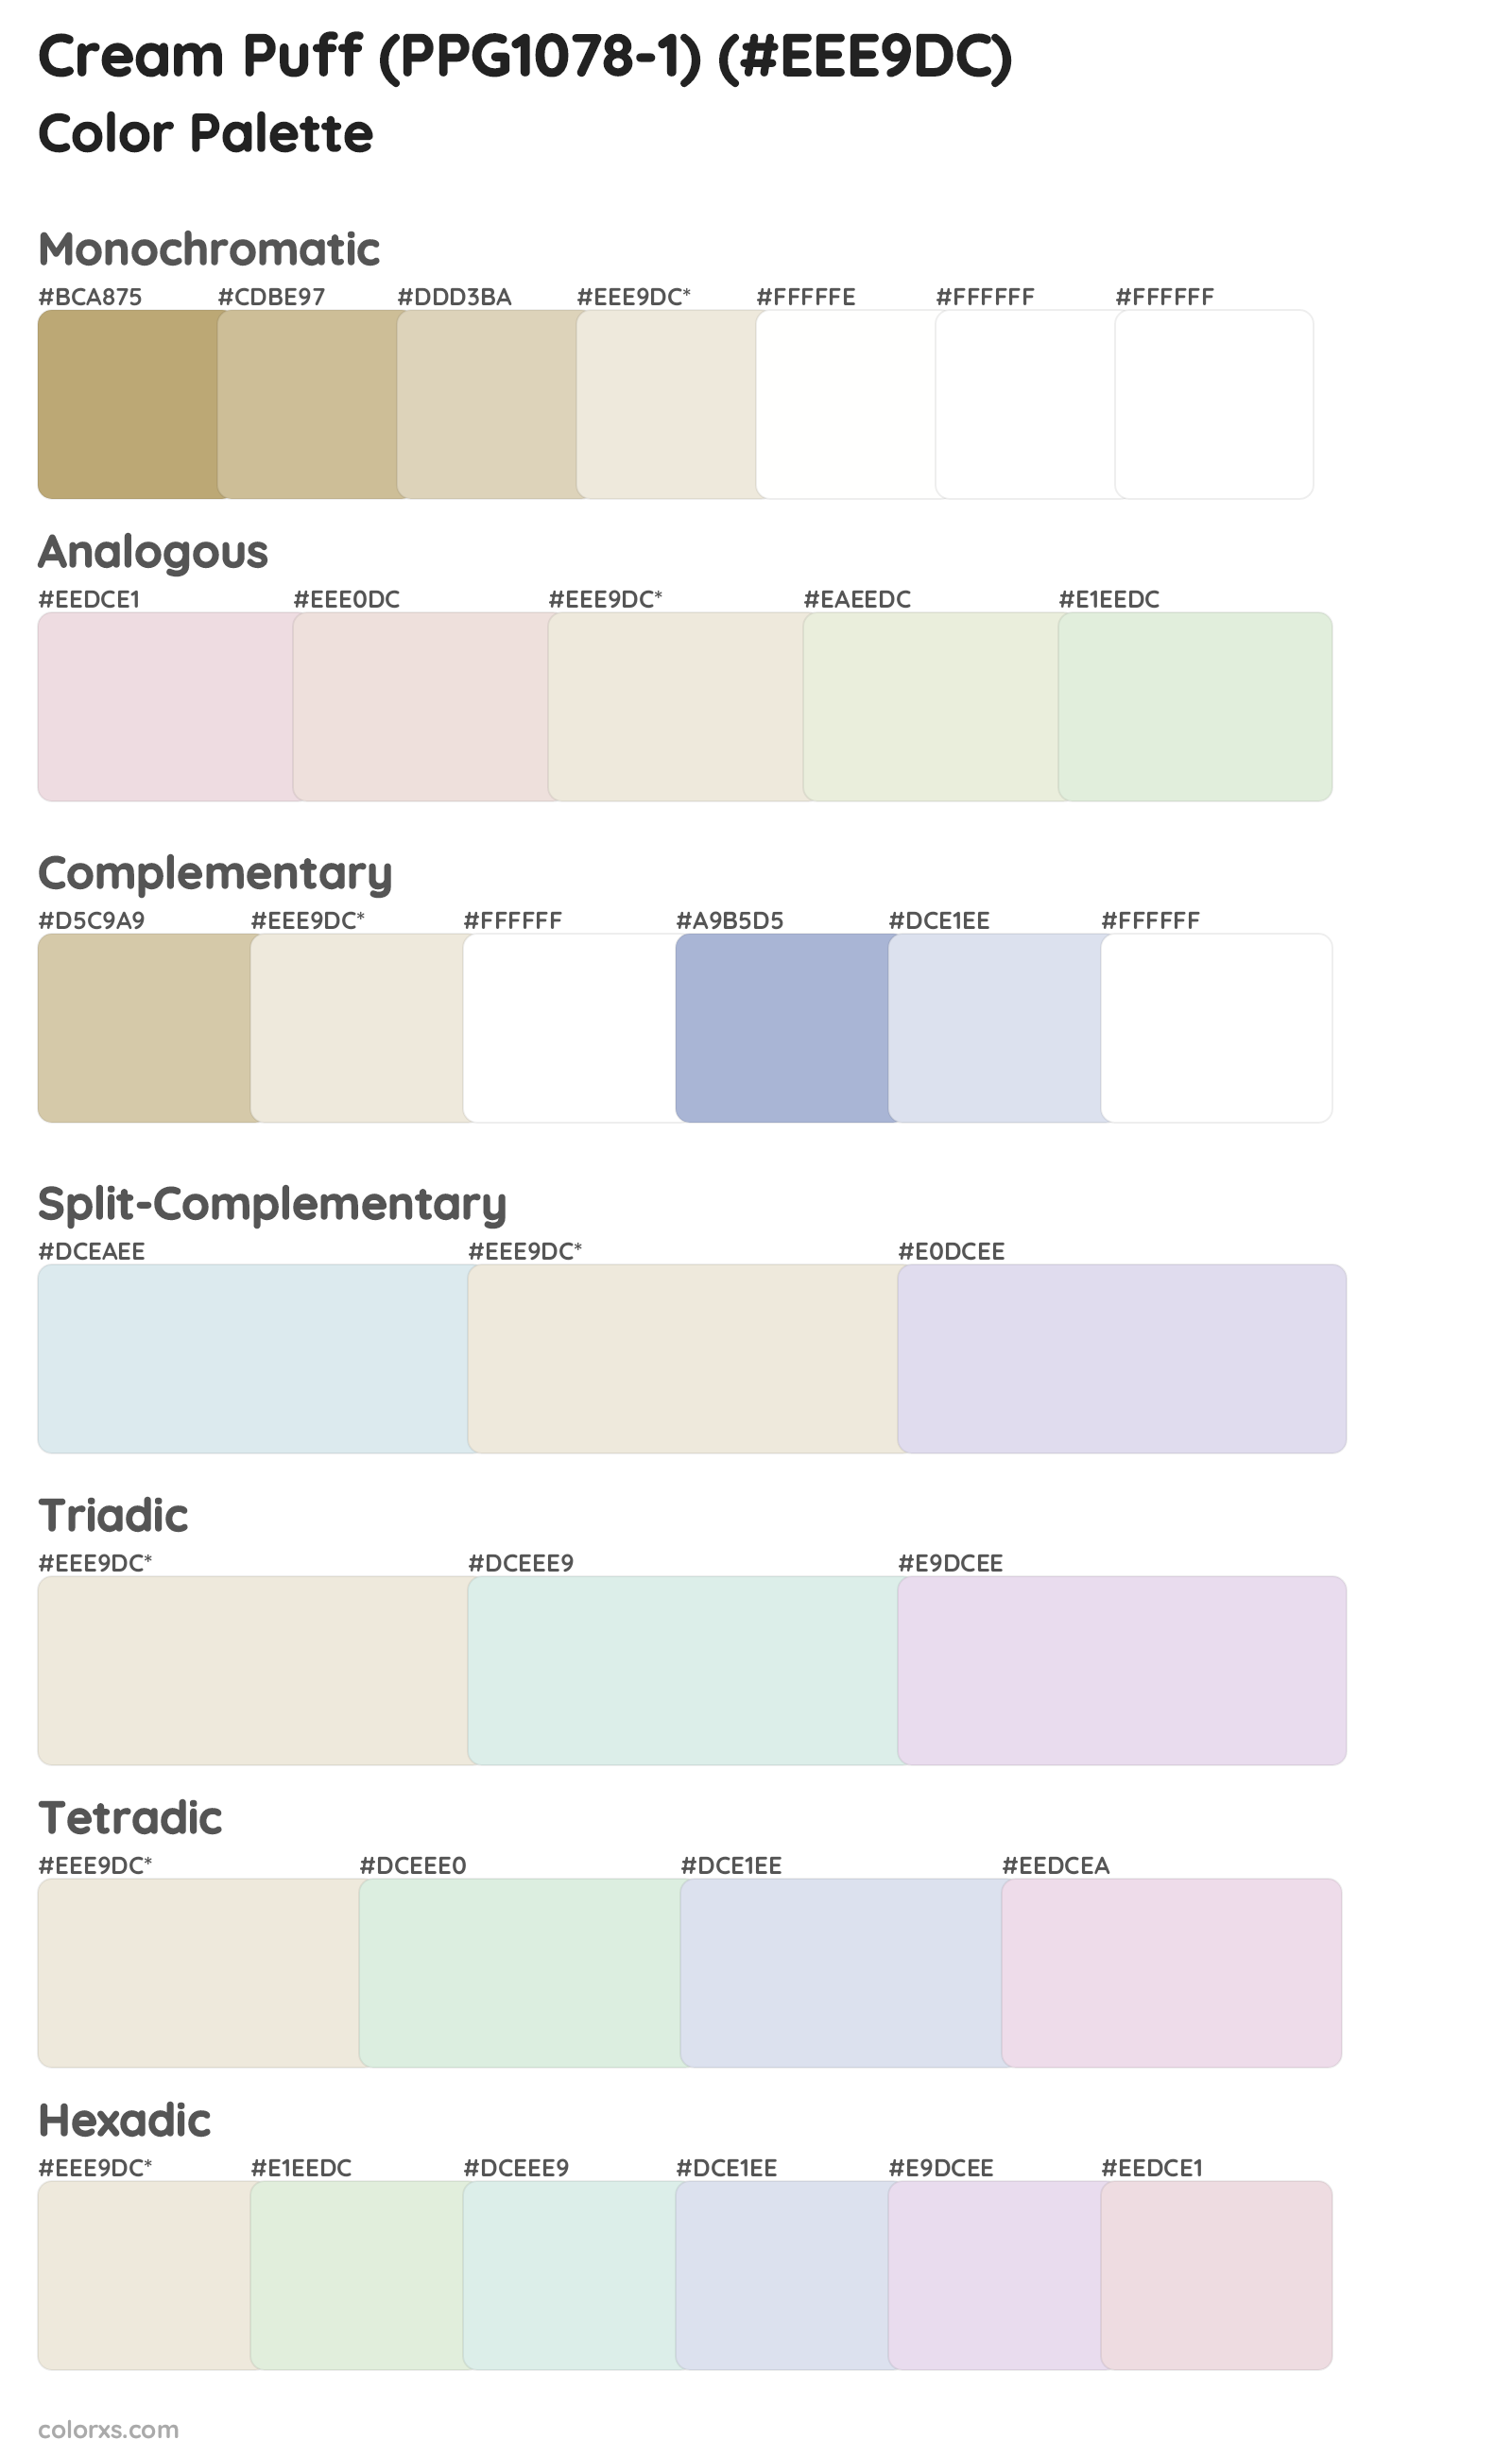 Cream Puff (PPG1078-1) Color Scheme Palettes